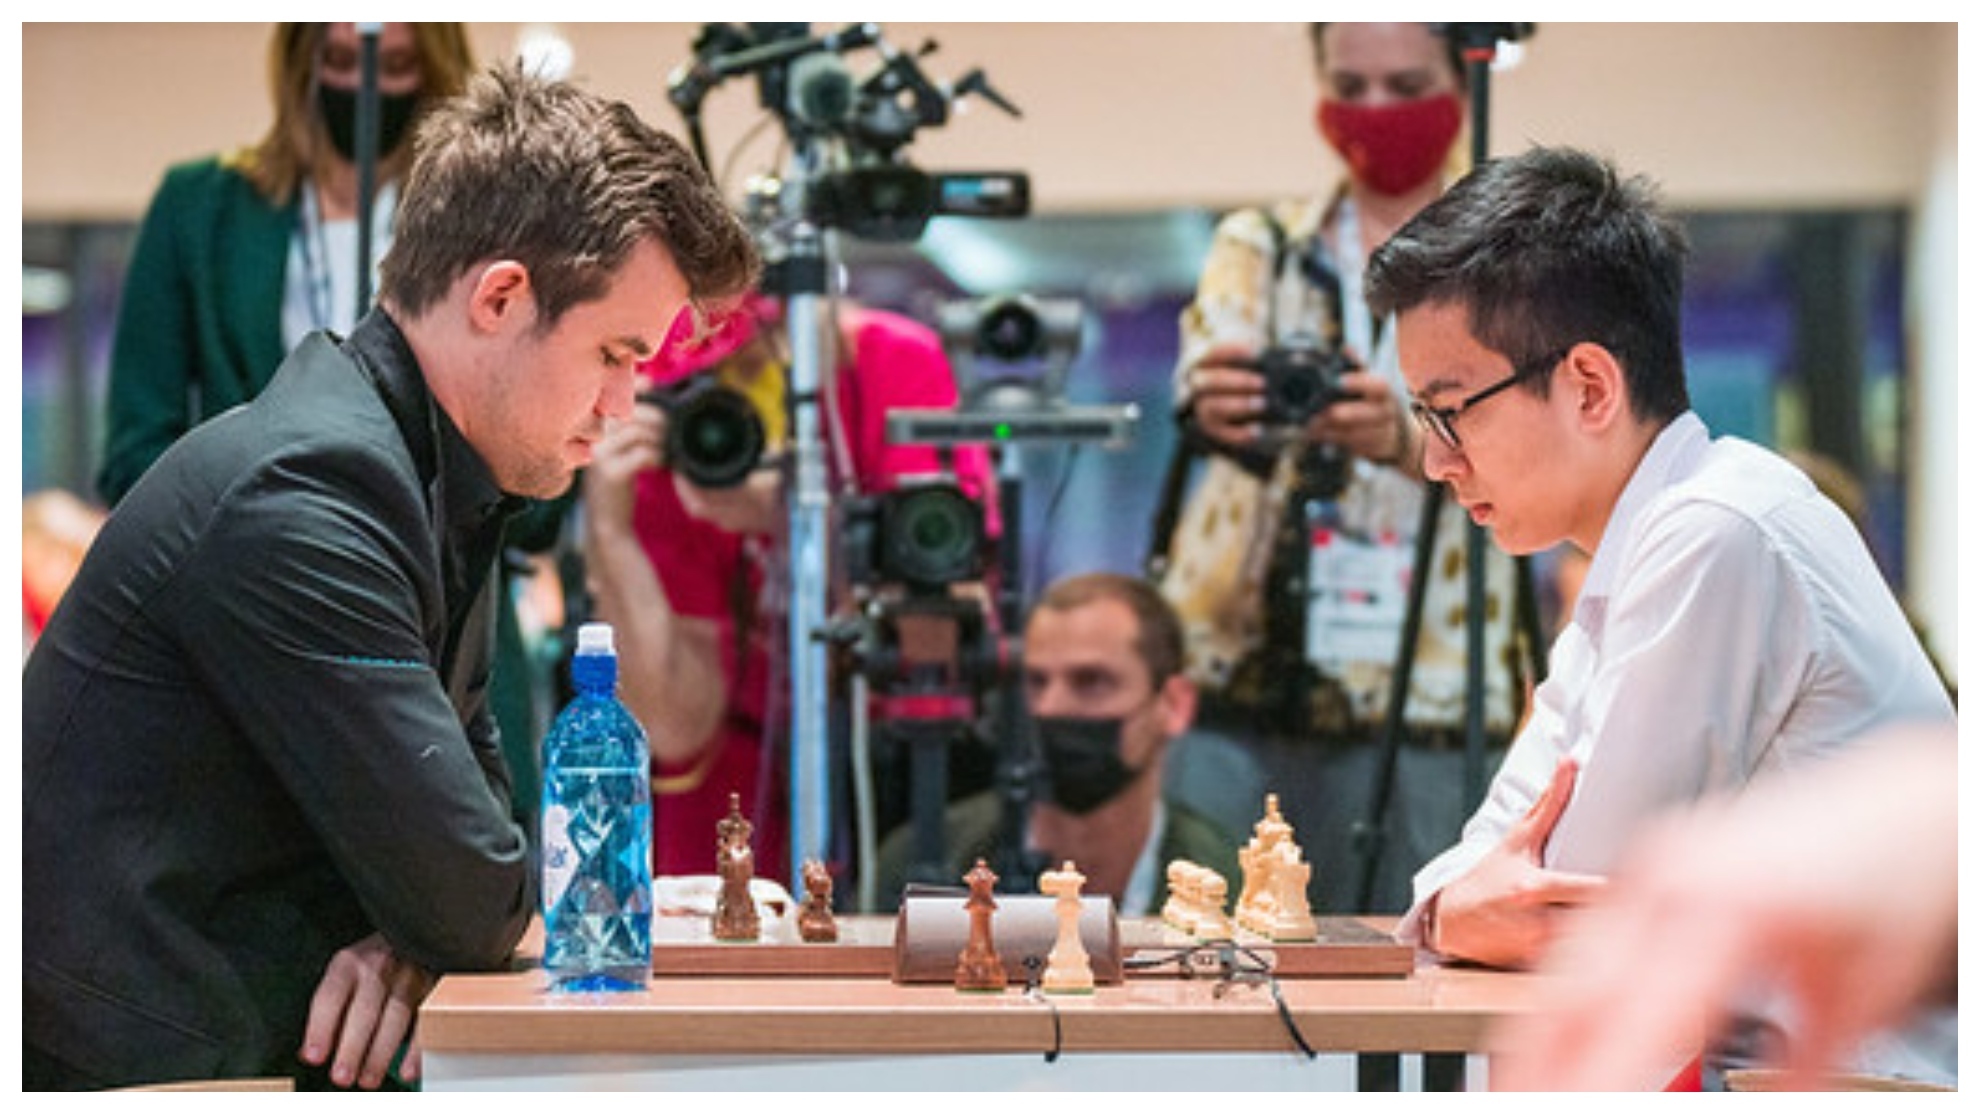 Inédito: Abdusattorov Nodirbek é o novo Campeão Mundial de Xadrez